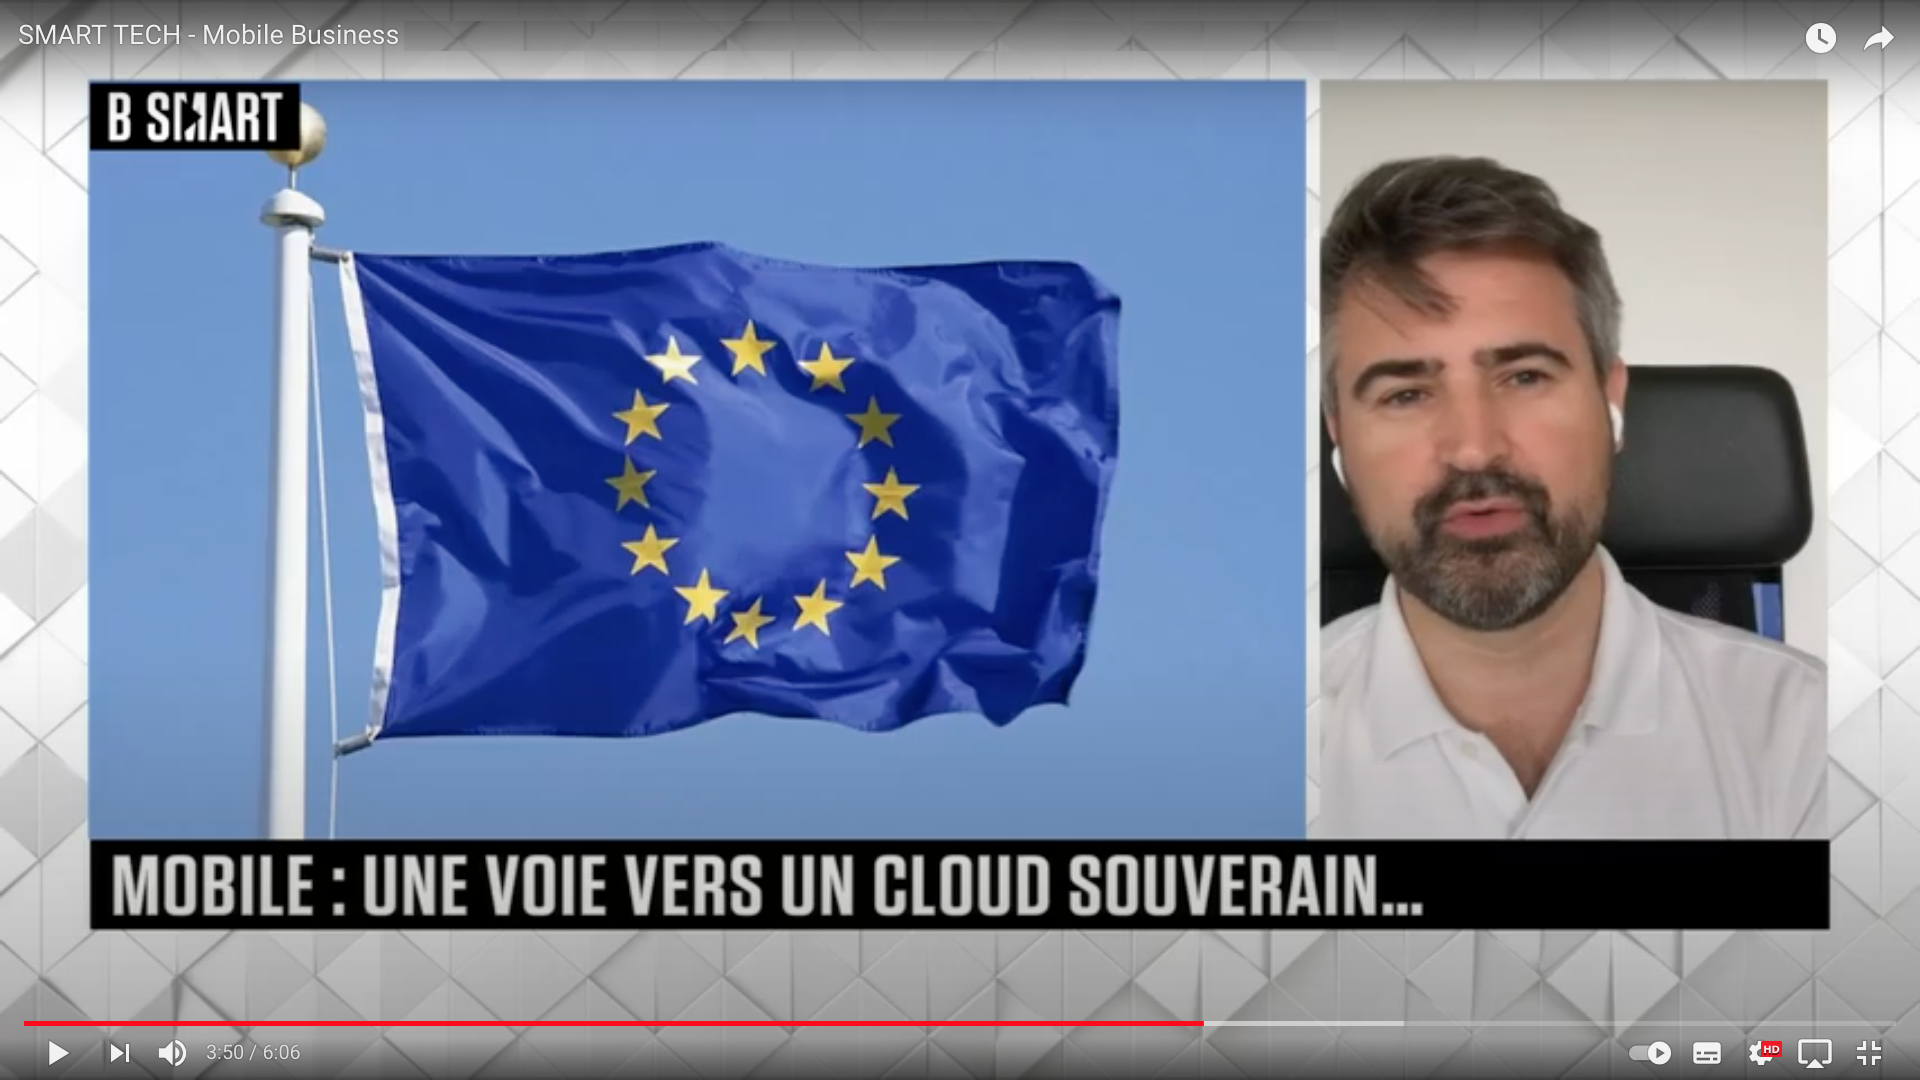 CPaaS : Une piste à suivre pour un cloud souverain européen ?